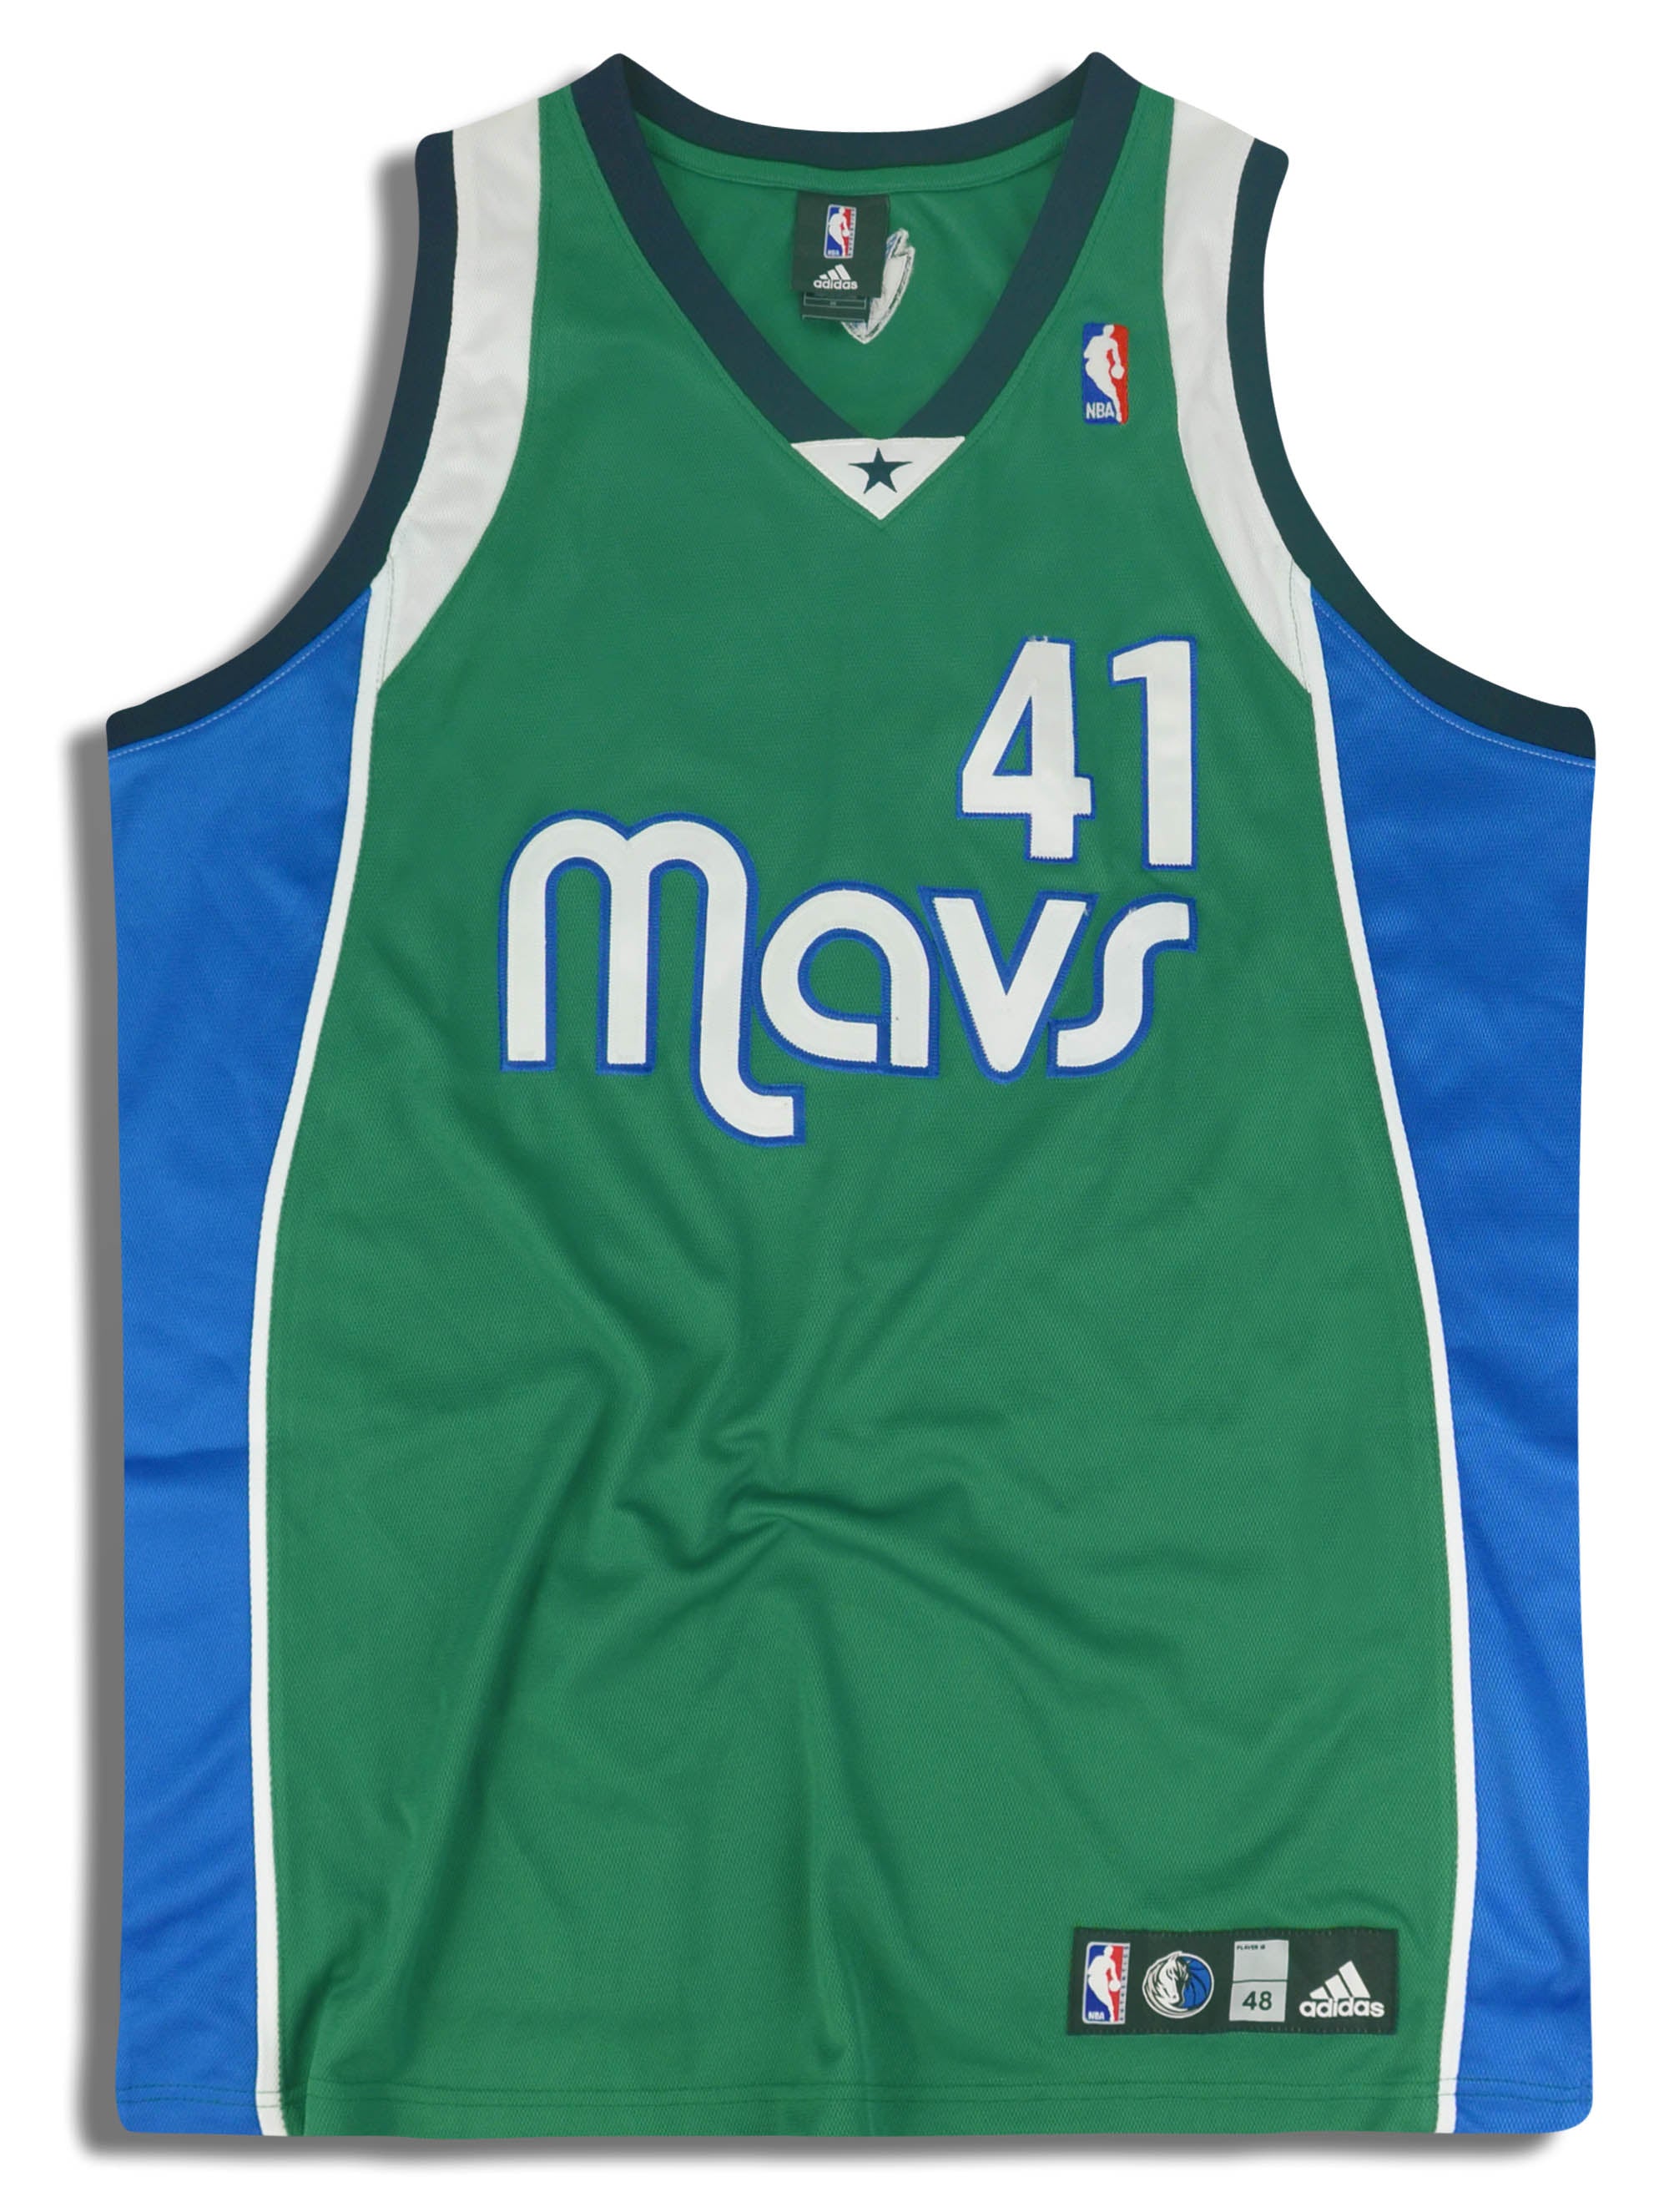 NBA Dirk Nowitzki 2007 allstar 賭城拉斯維加斯明星賽球衣(Adidas青年版XL 電繡)